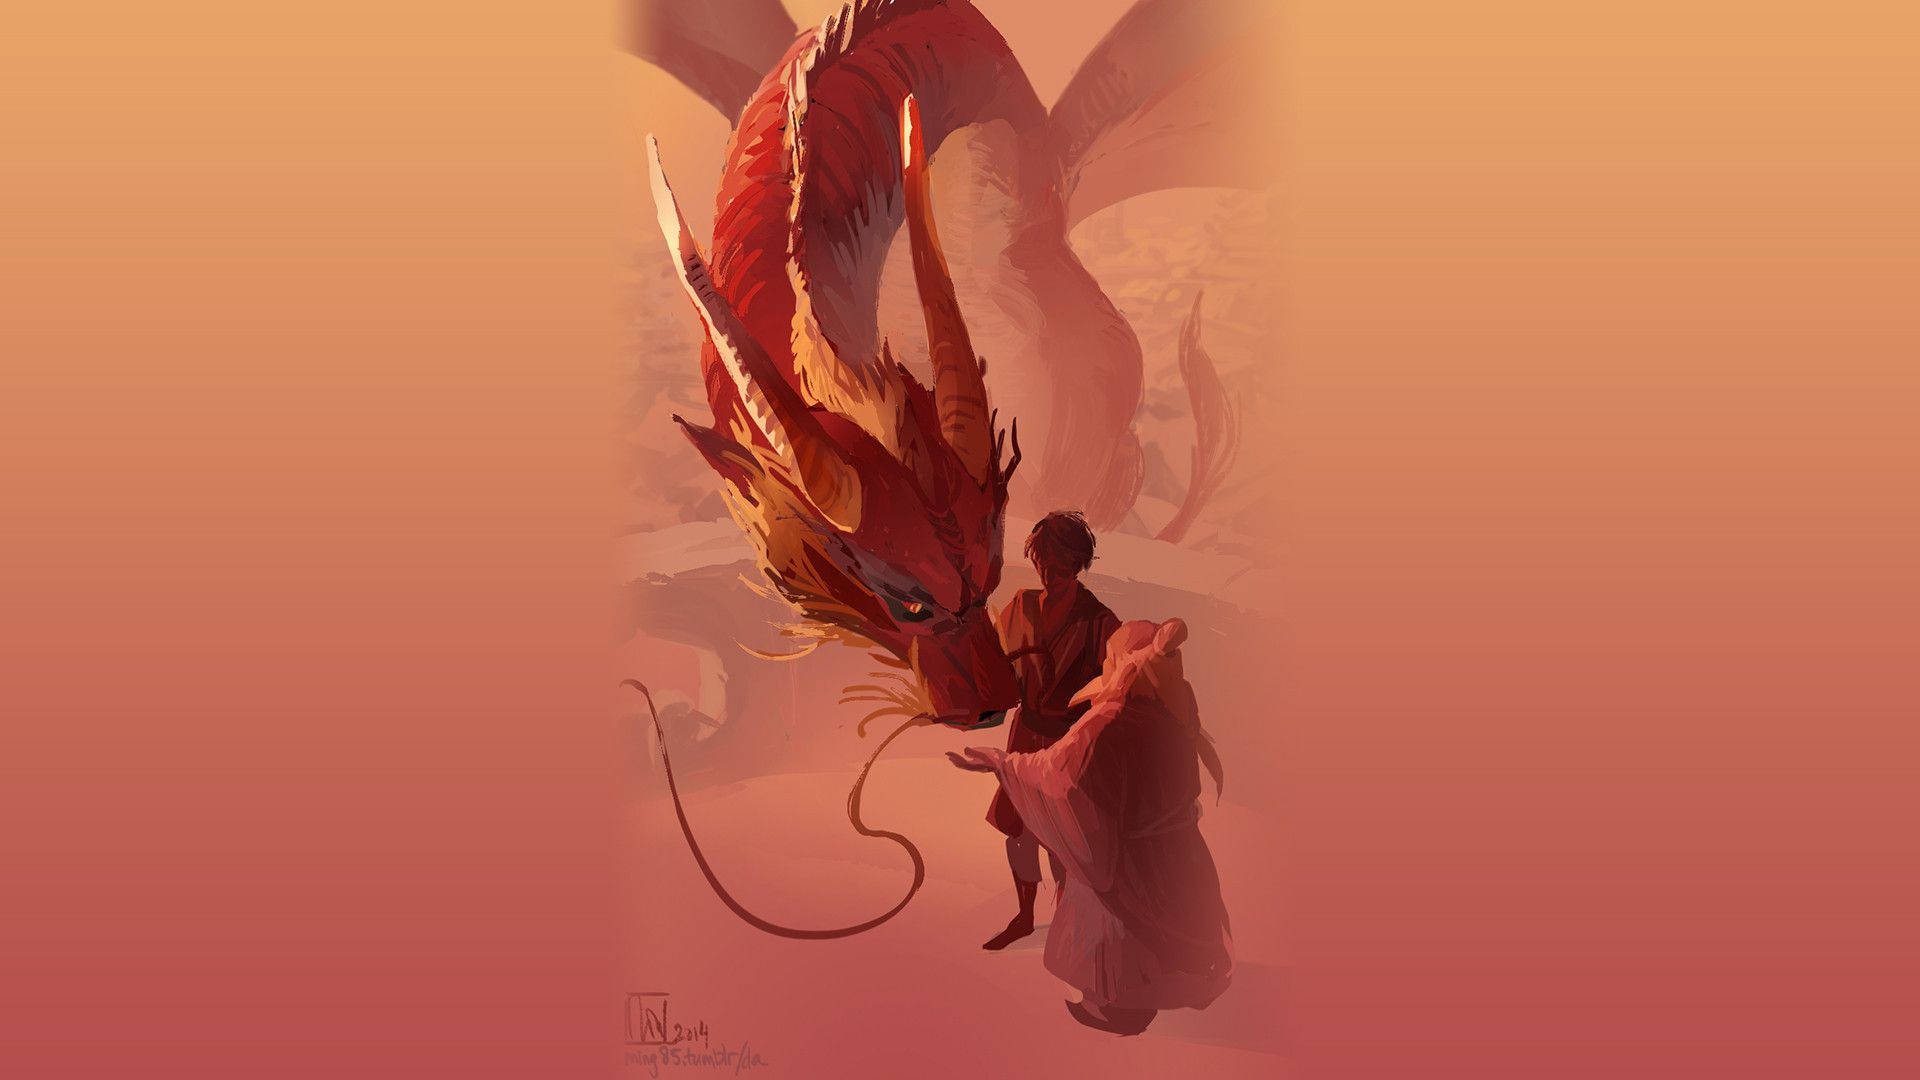 Avatar The Last Airbender Zuko, Iroh And Dragon